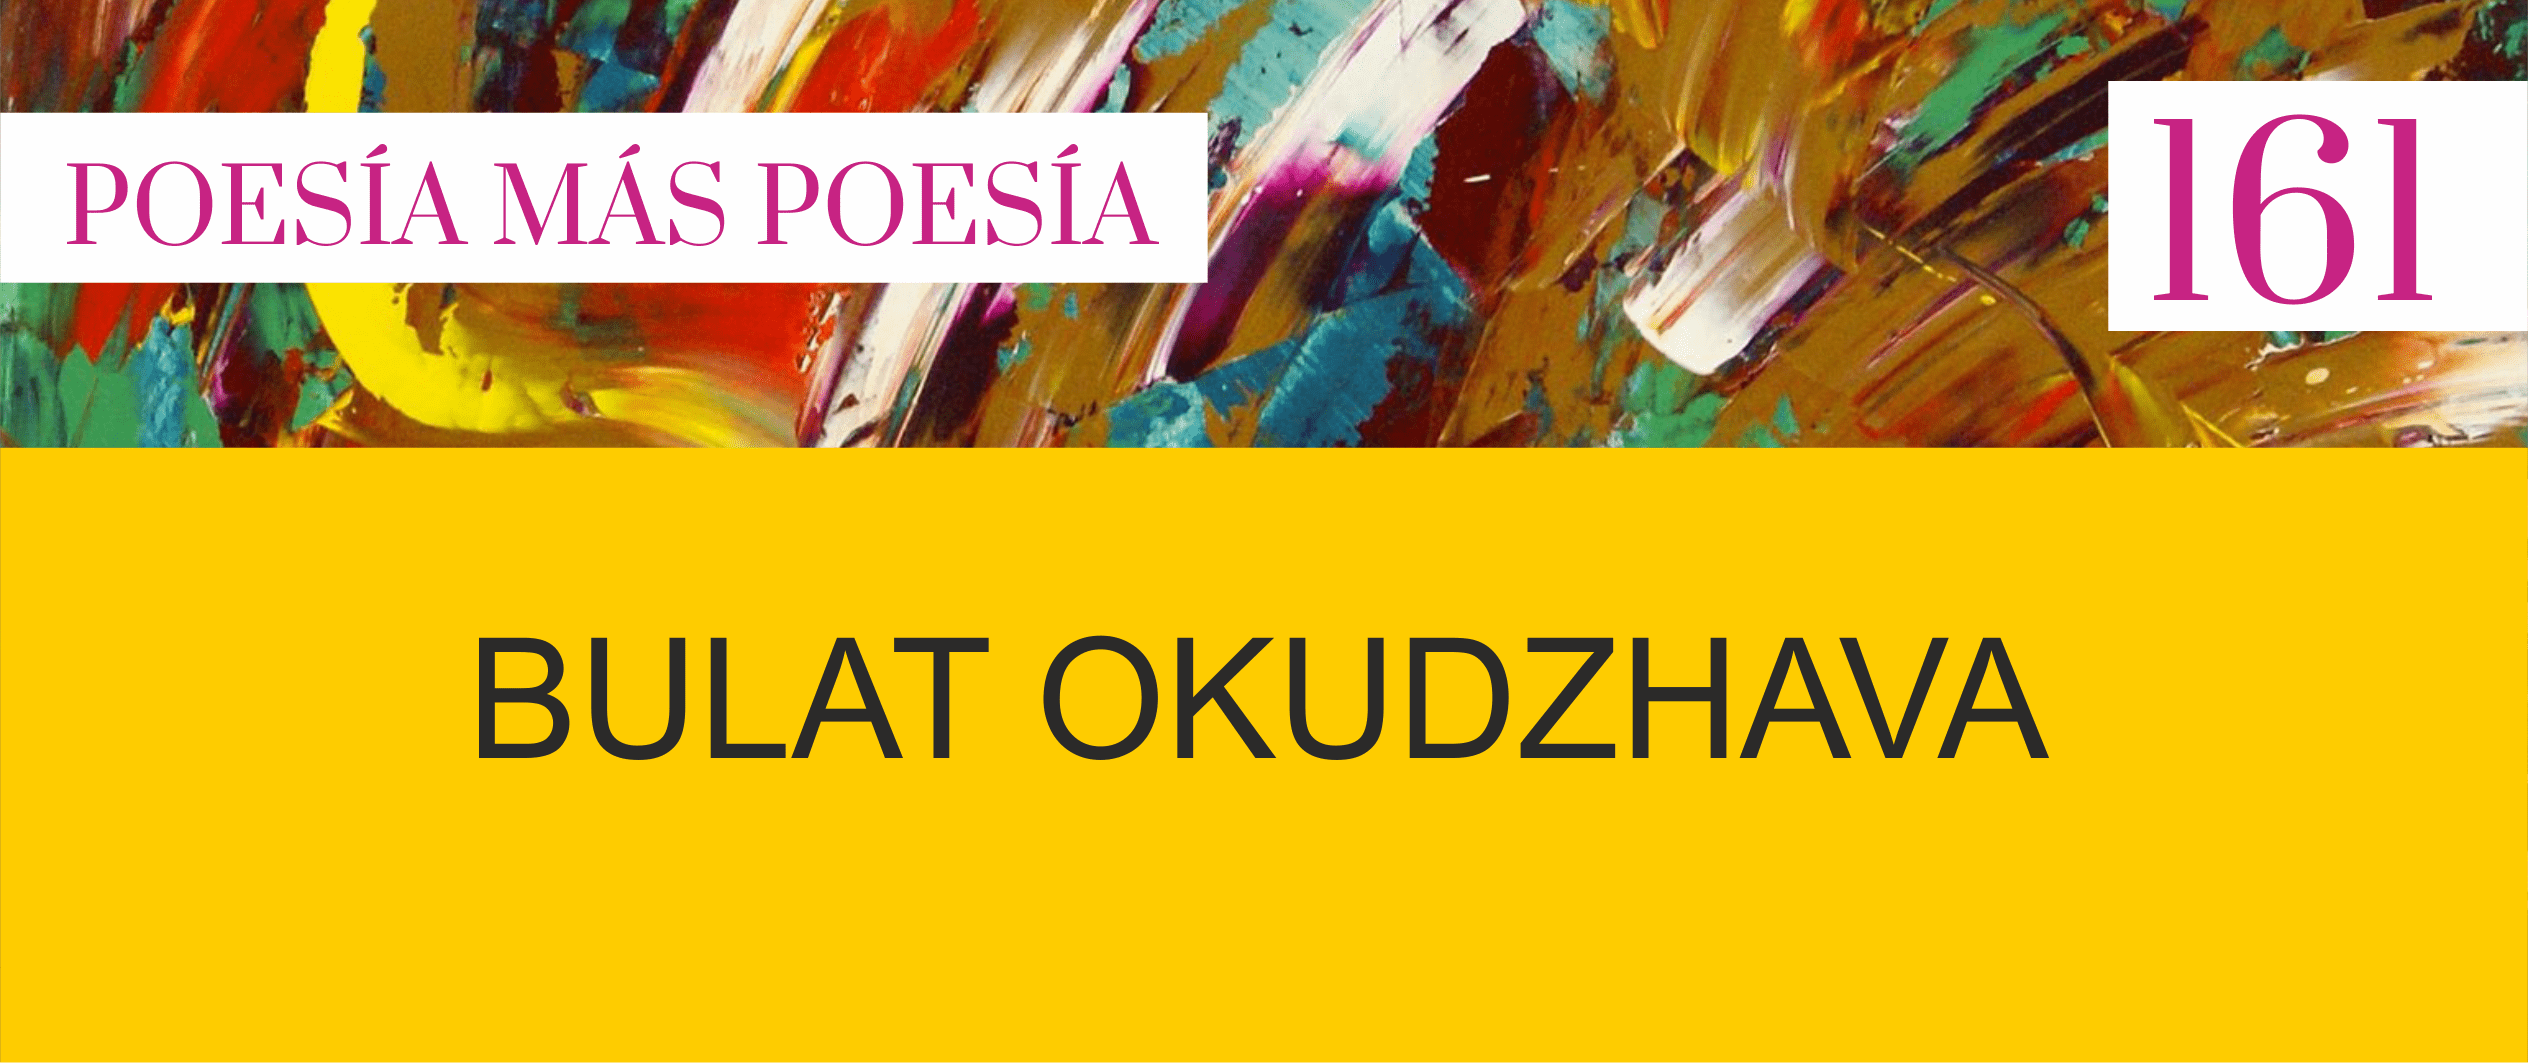 161. Poesía más Poesía: Bulat Okudzhava